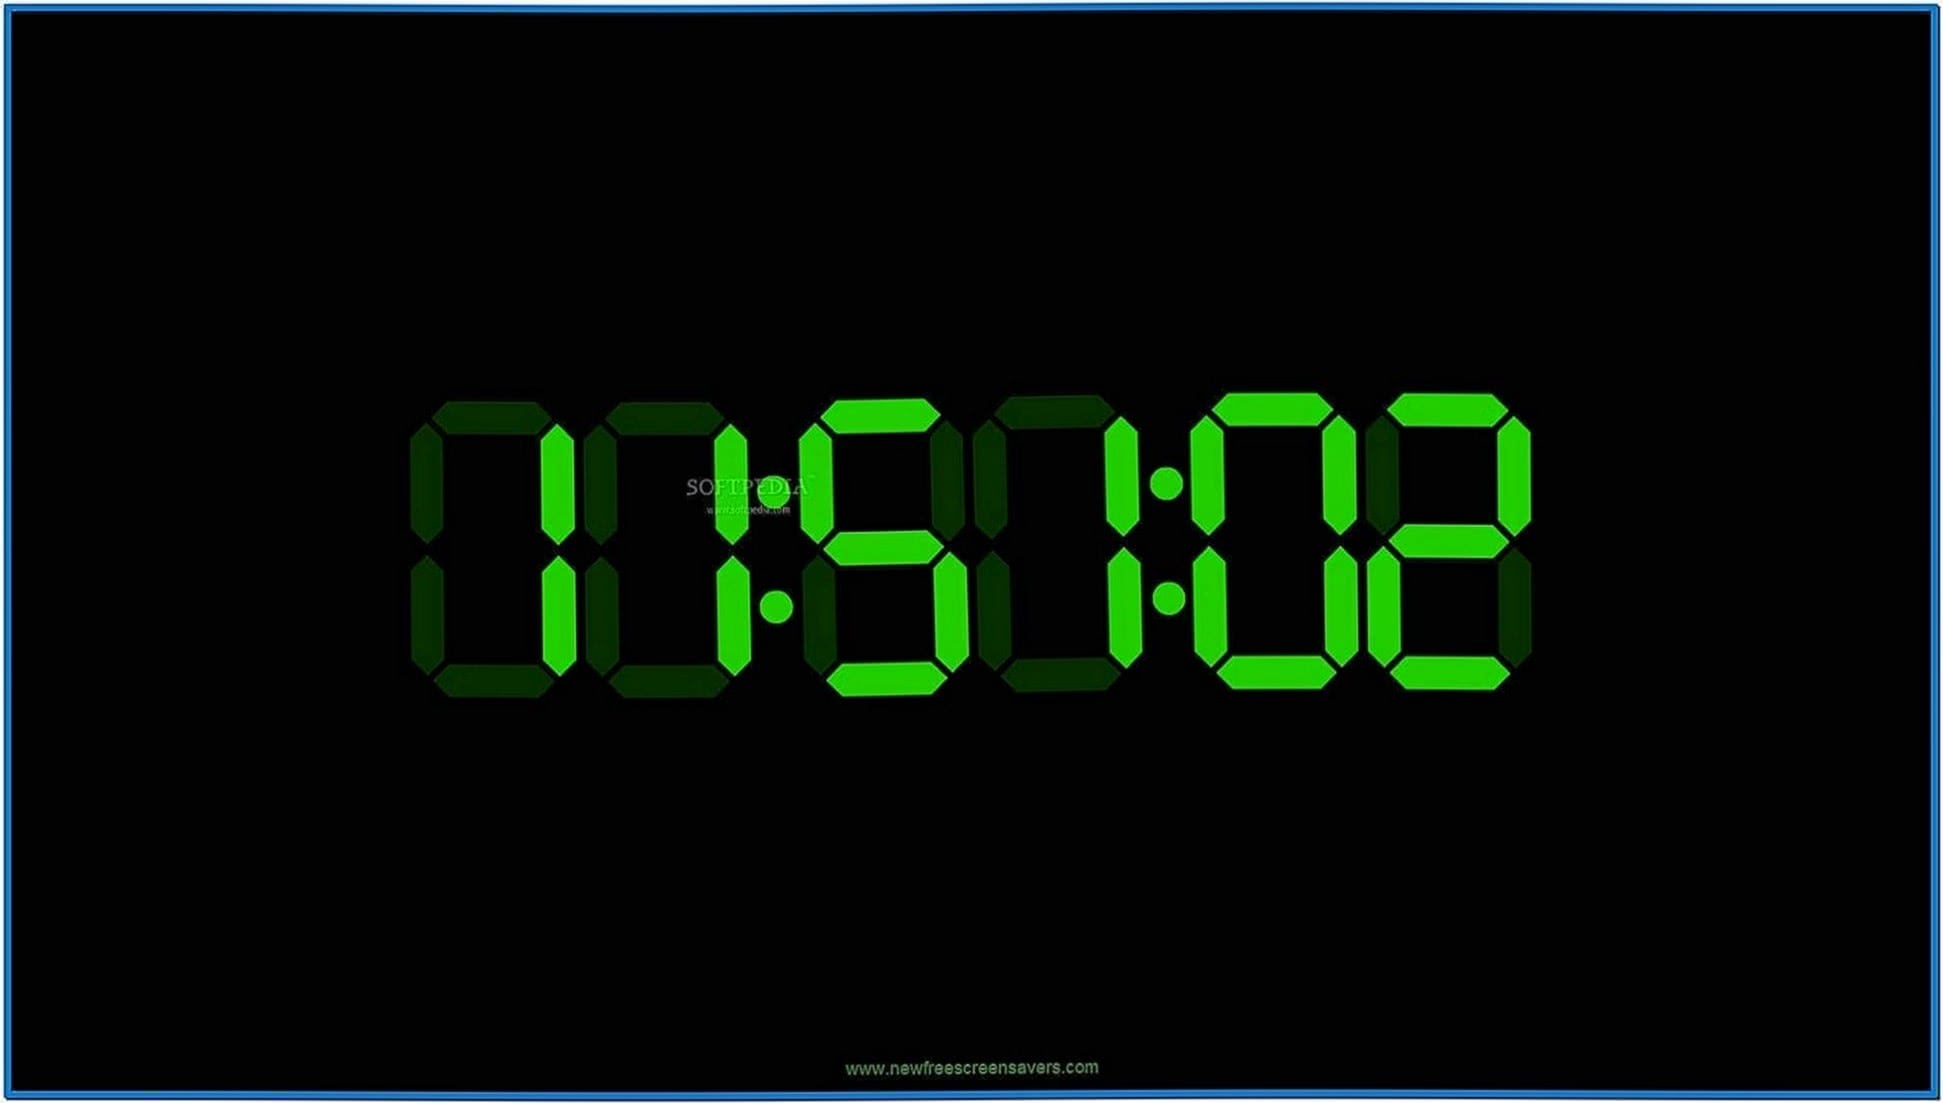 Linux digital clock screensaver - Download free